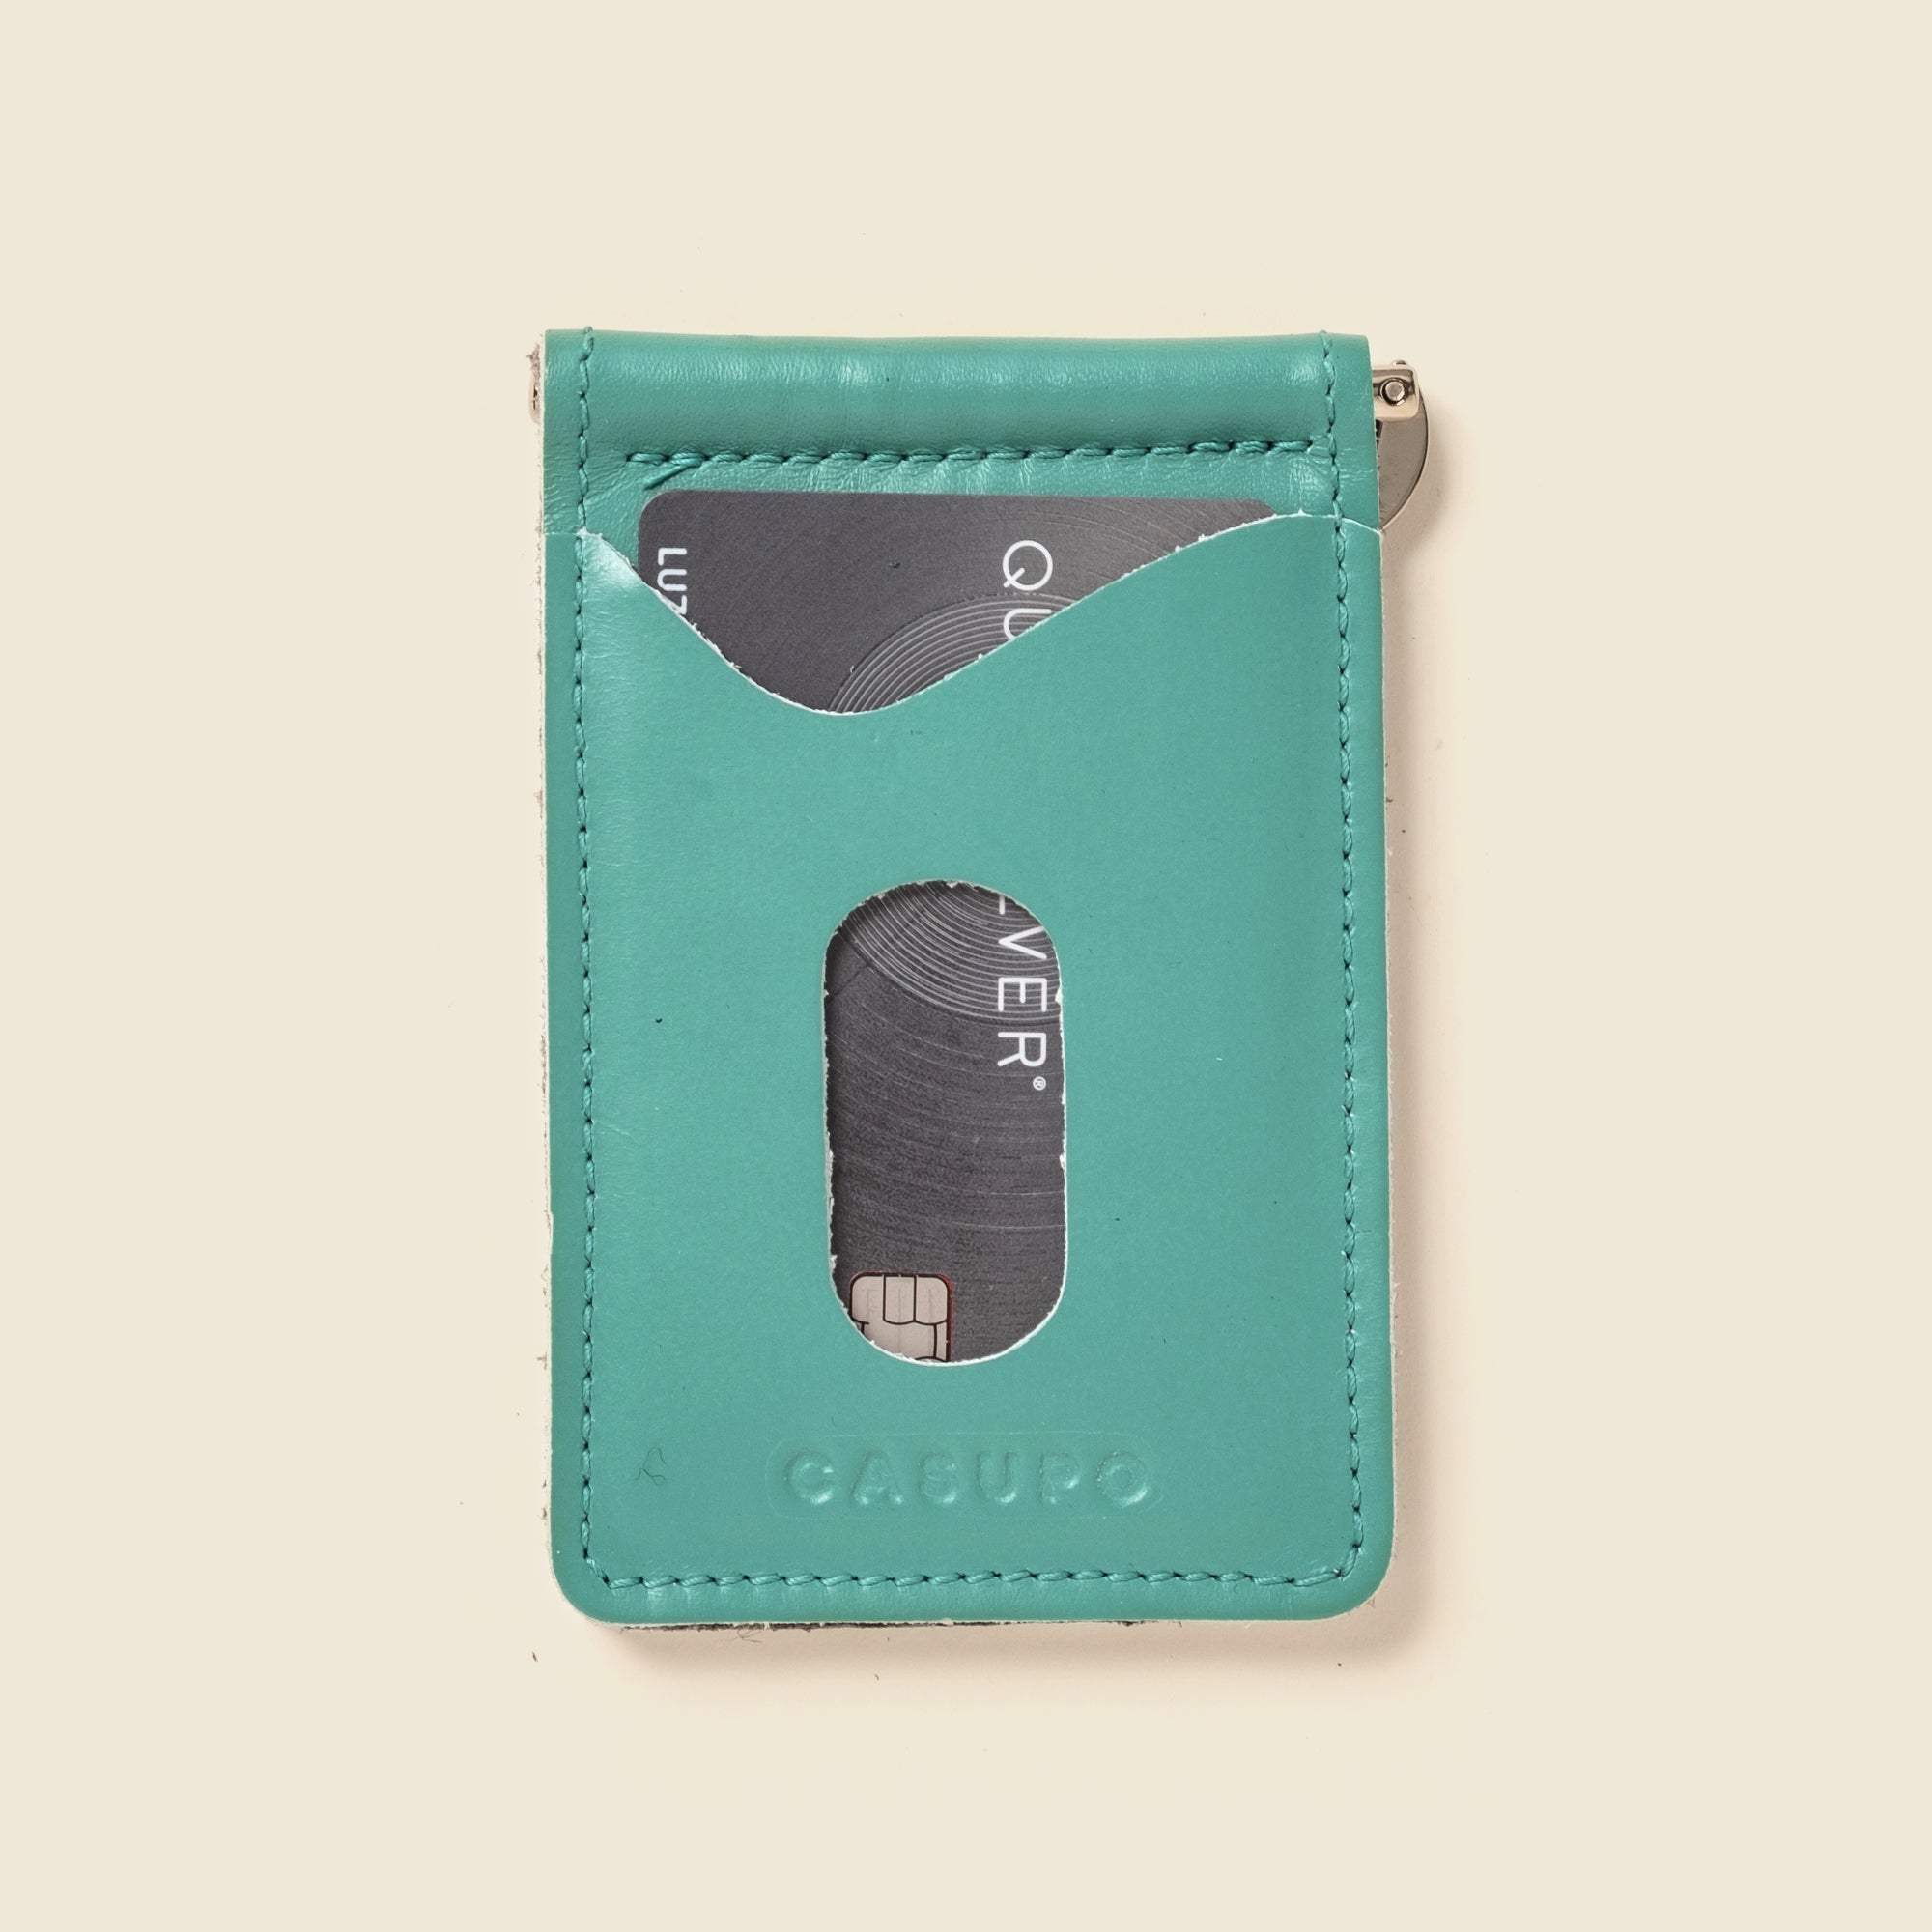 pastel blue, teal leather money clip wallet for men